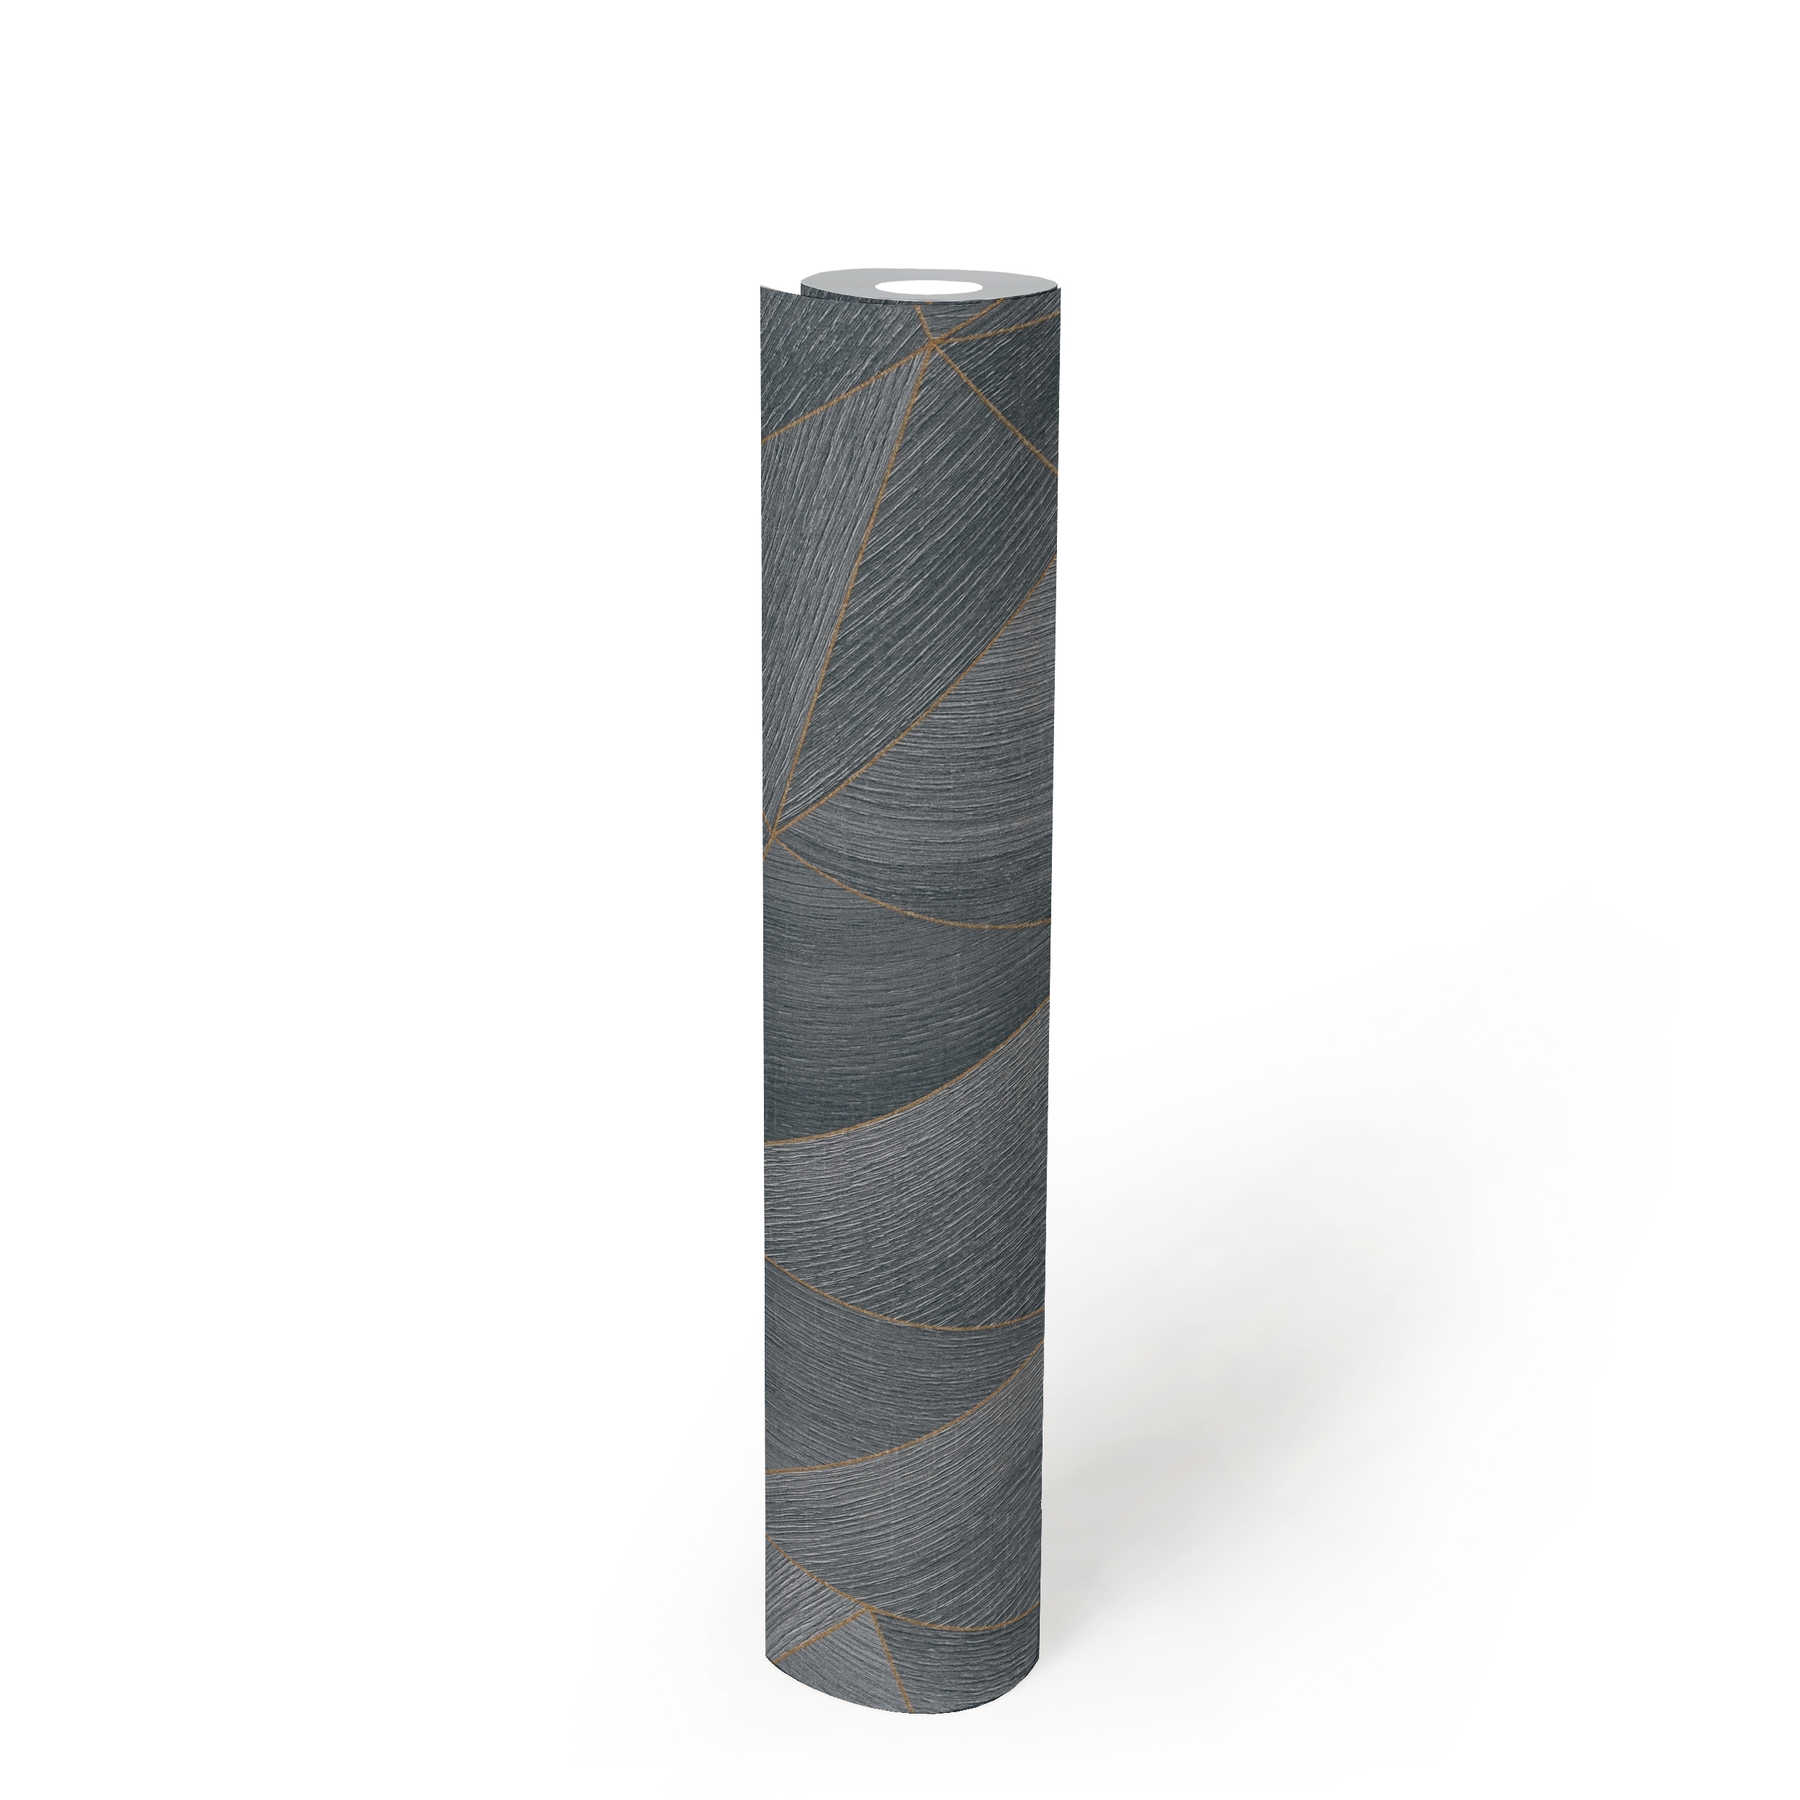             Carta da parati in legno con motivo geometrico ed effetto metallico - grigio, nero
        